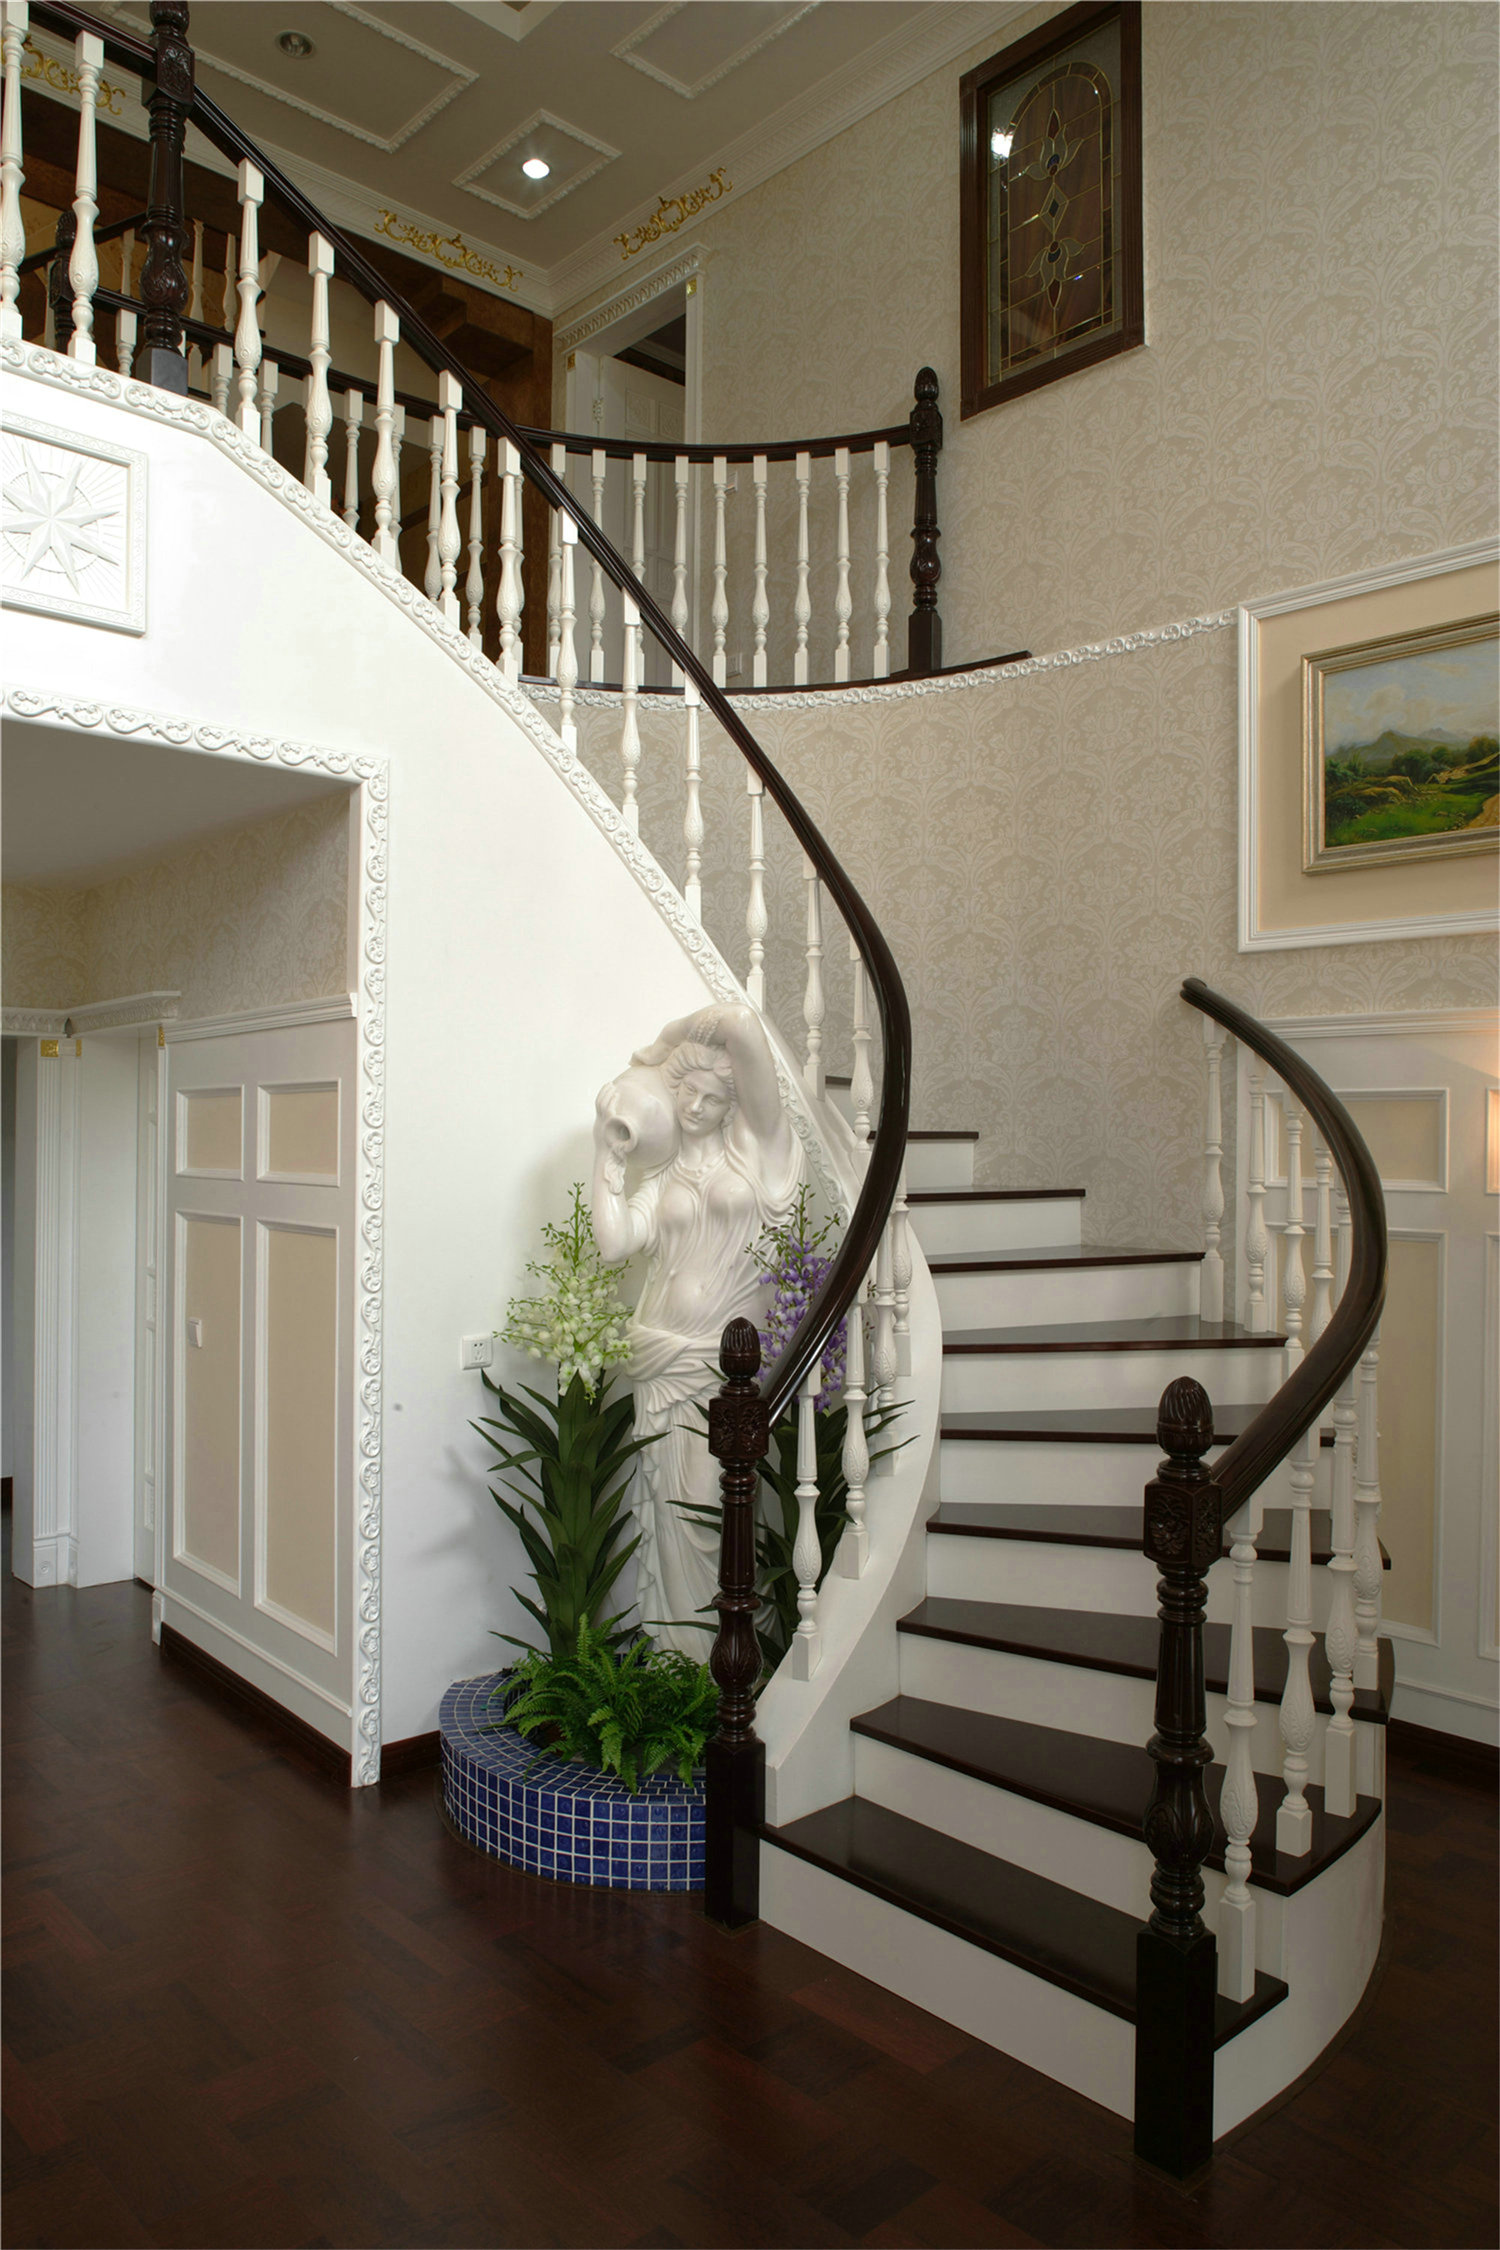 别墅 美式 小资 楼梯图片来自孙进进在复地香栀花园别墅美式清新装修的分享